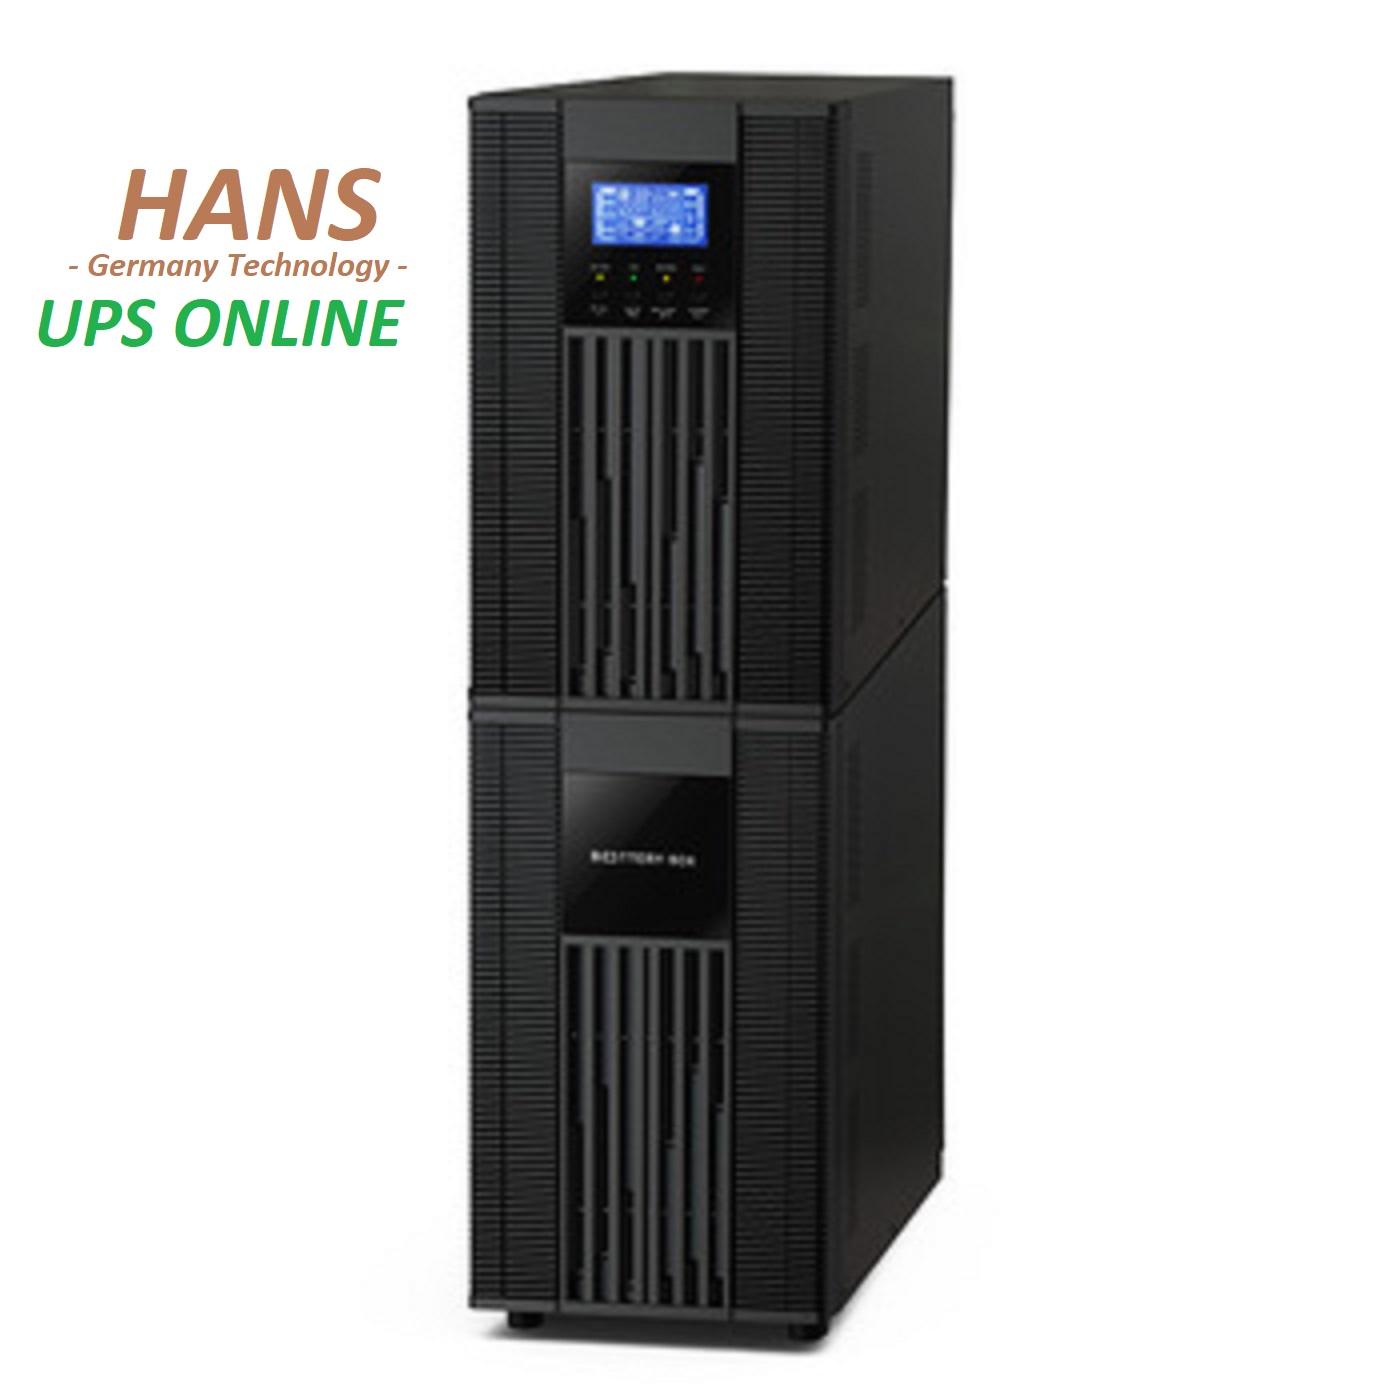 Bộ lưu điện _UPS online Hans 6KVA